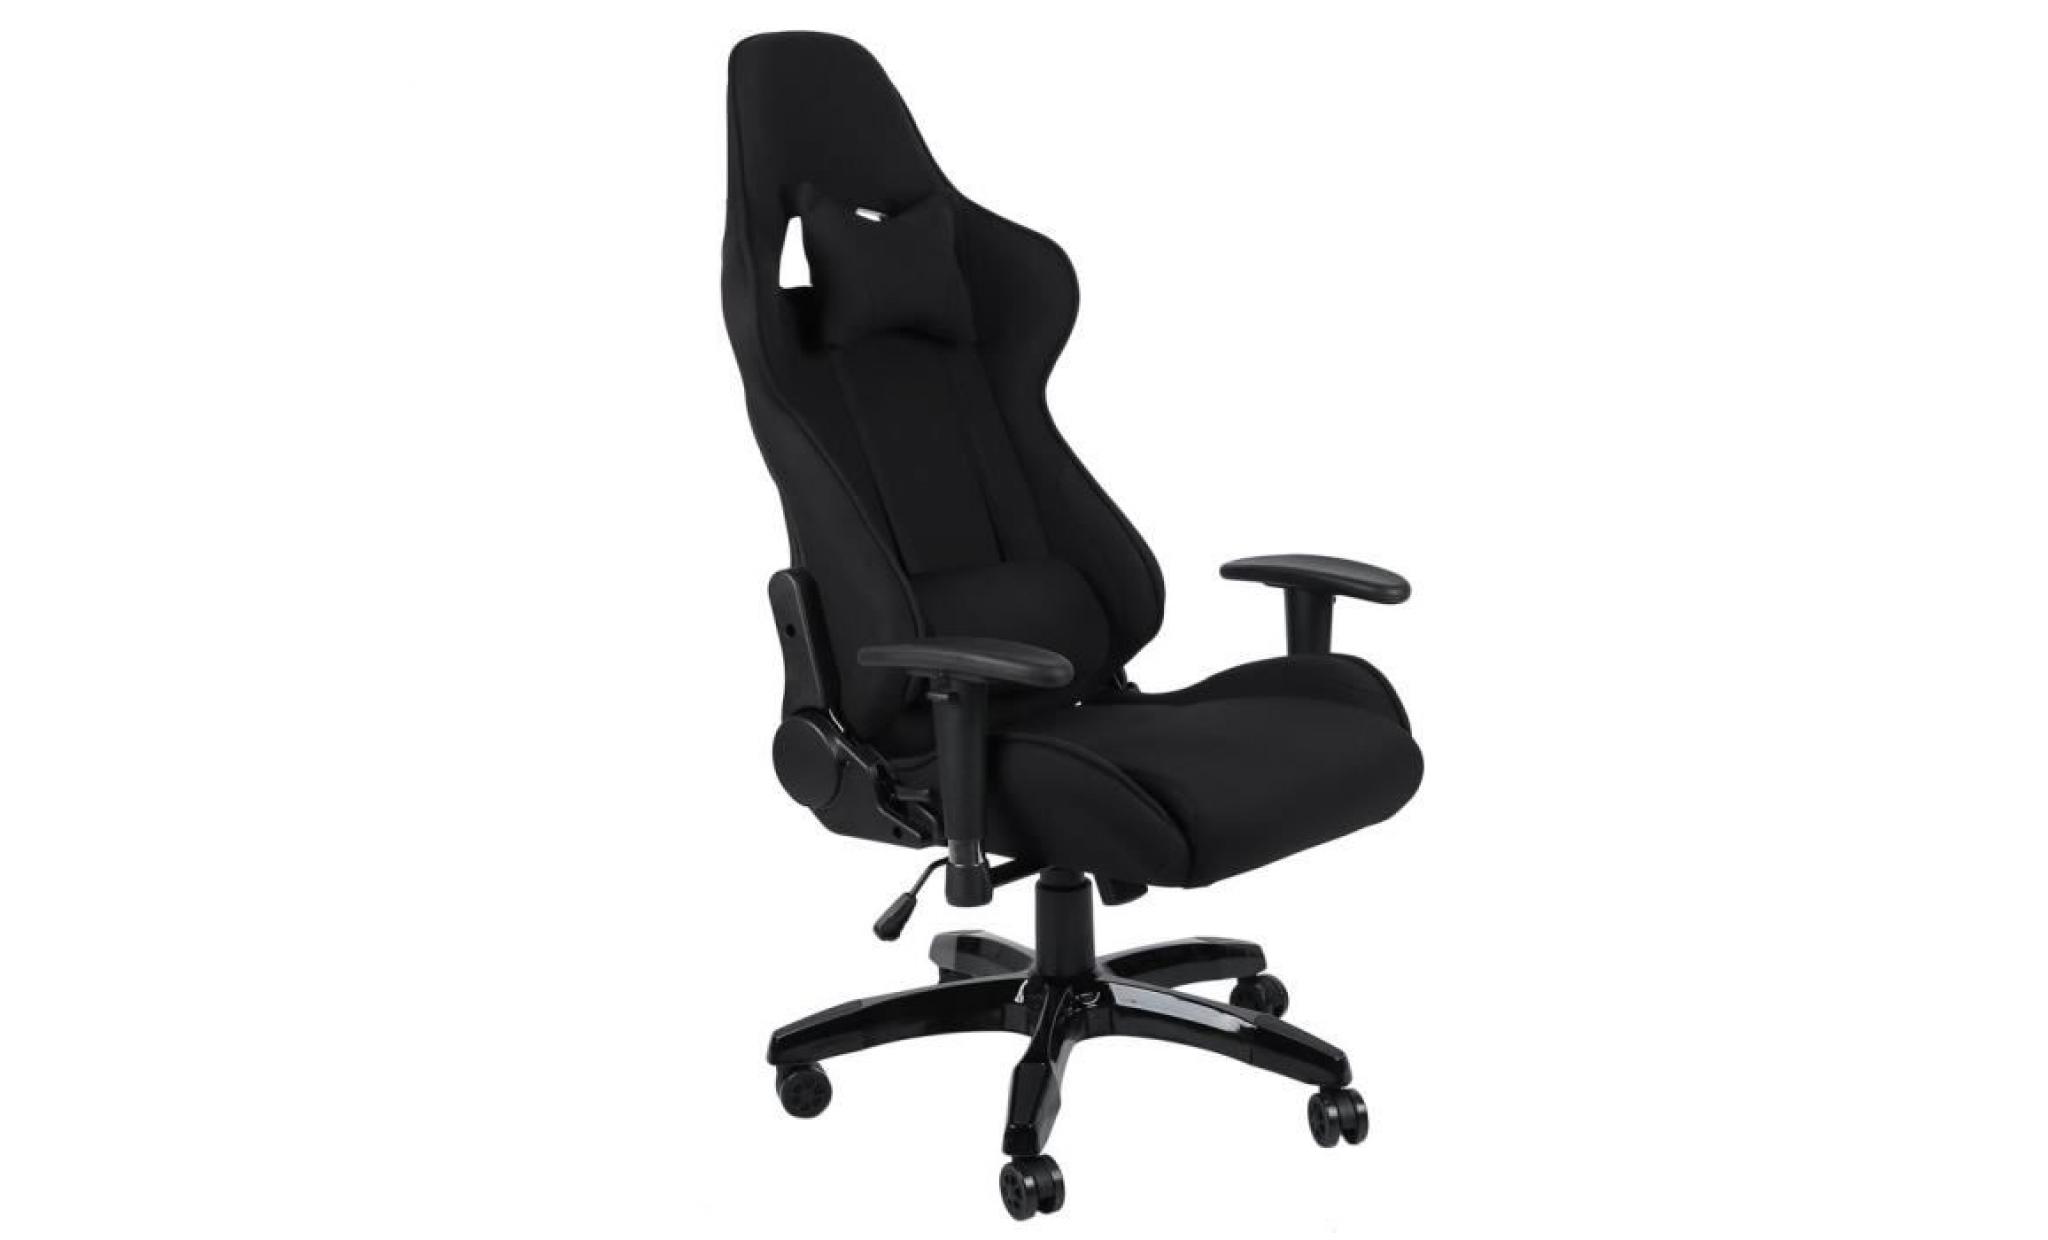 leshp® fauteuil de bureau en tissu respirant super confortable pivotant à 360 degrés noir pas cher